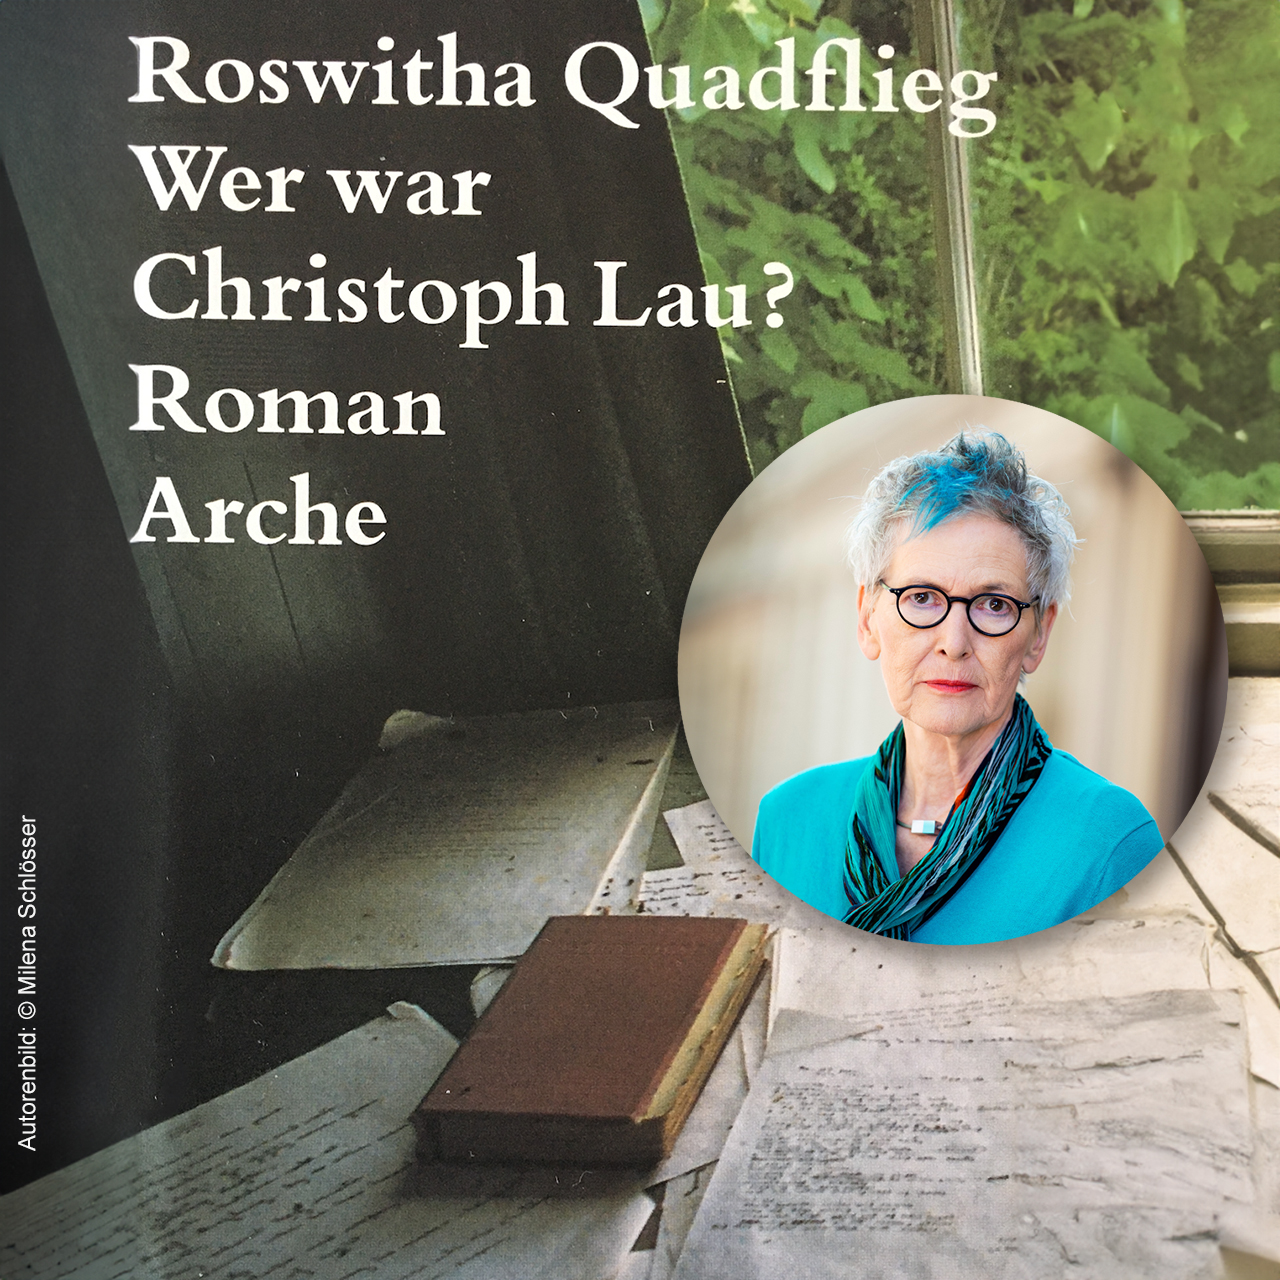 Lesung von Roswitha Quadflieg in Magdeburg